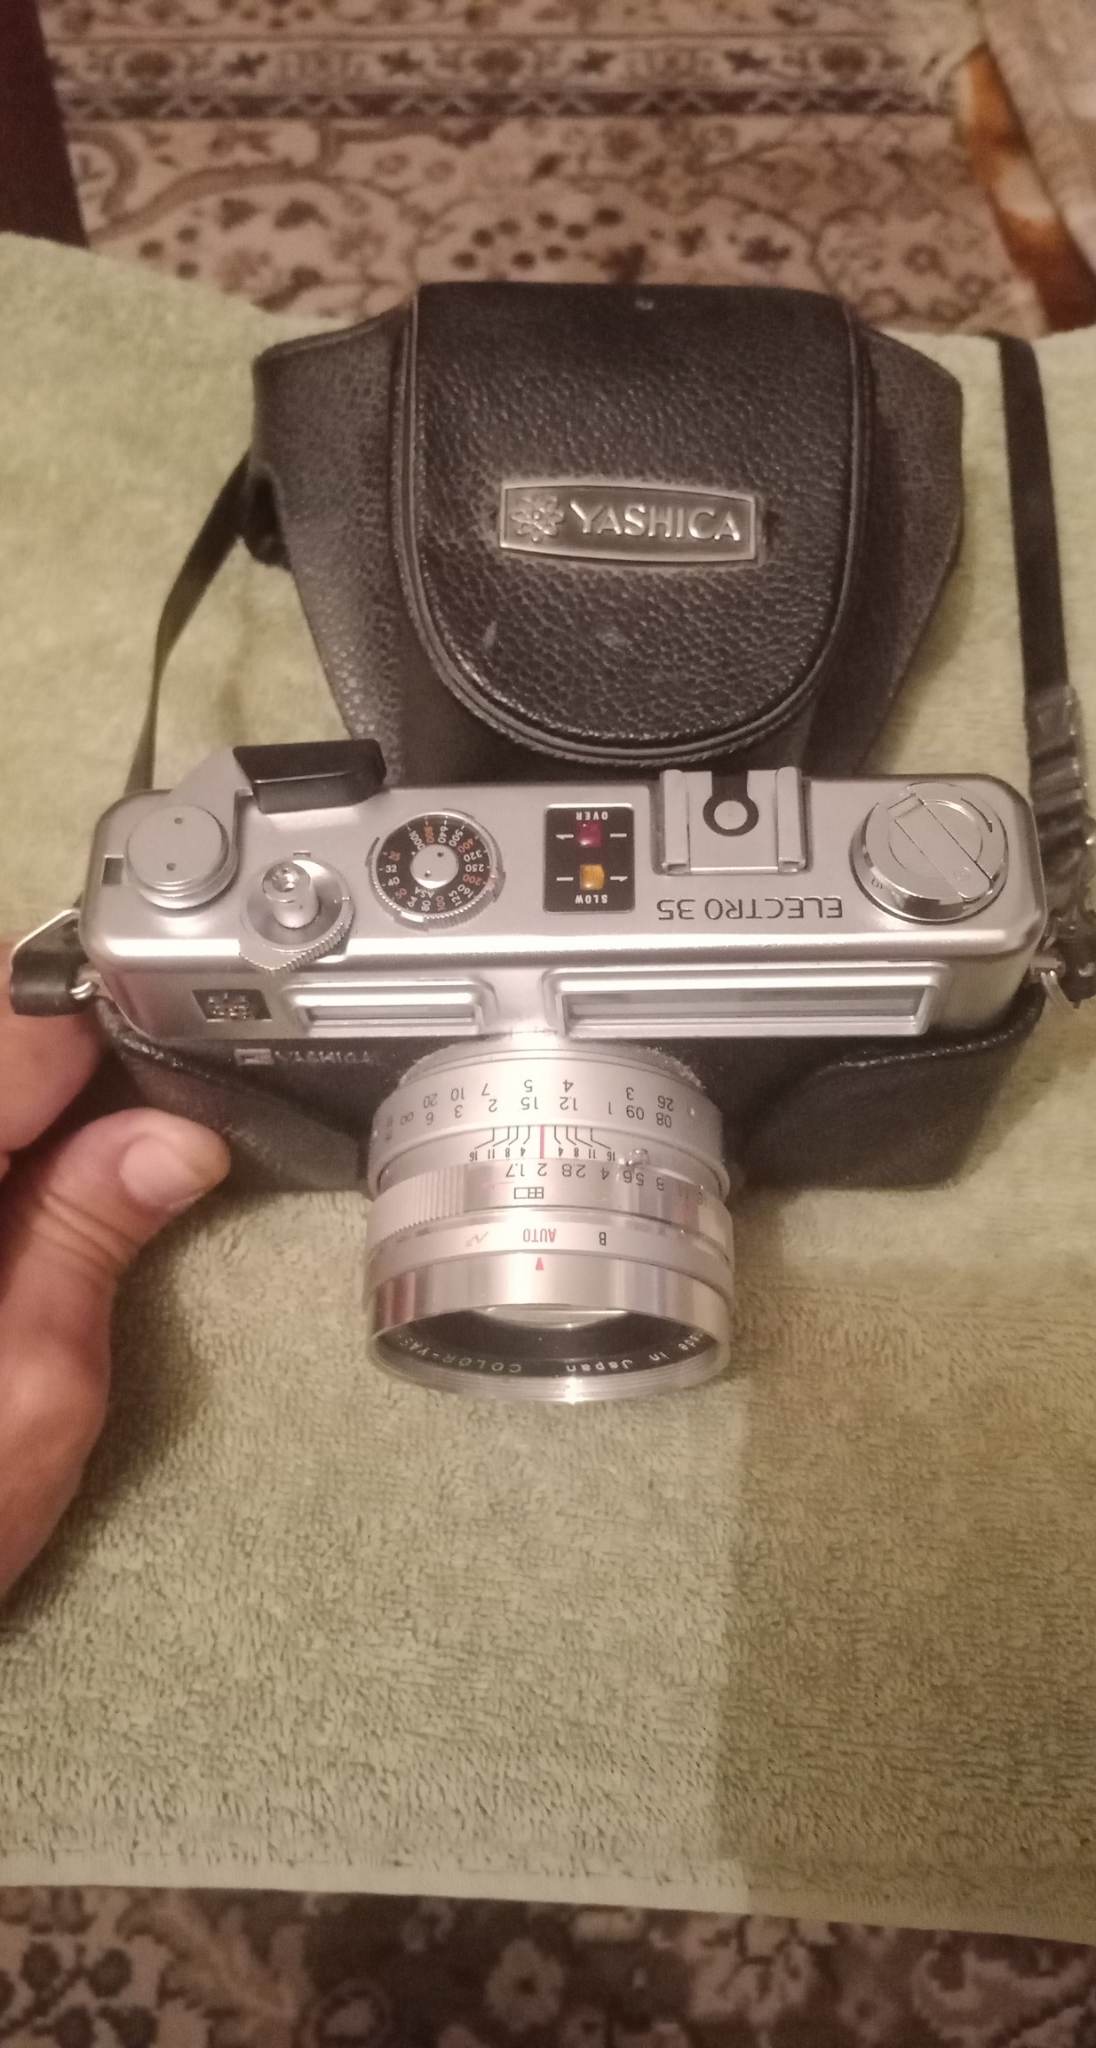 للبيع كاميرا ياشيكا من امريكا